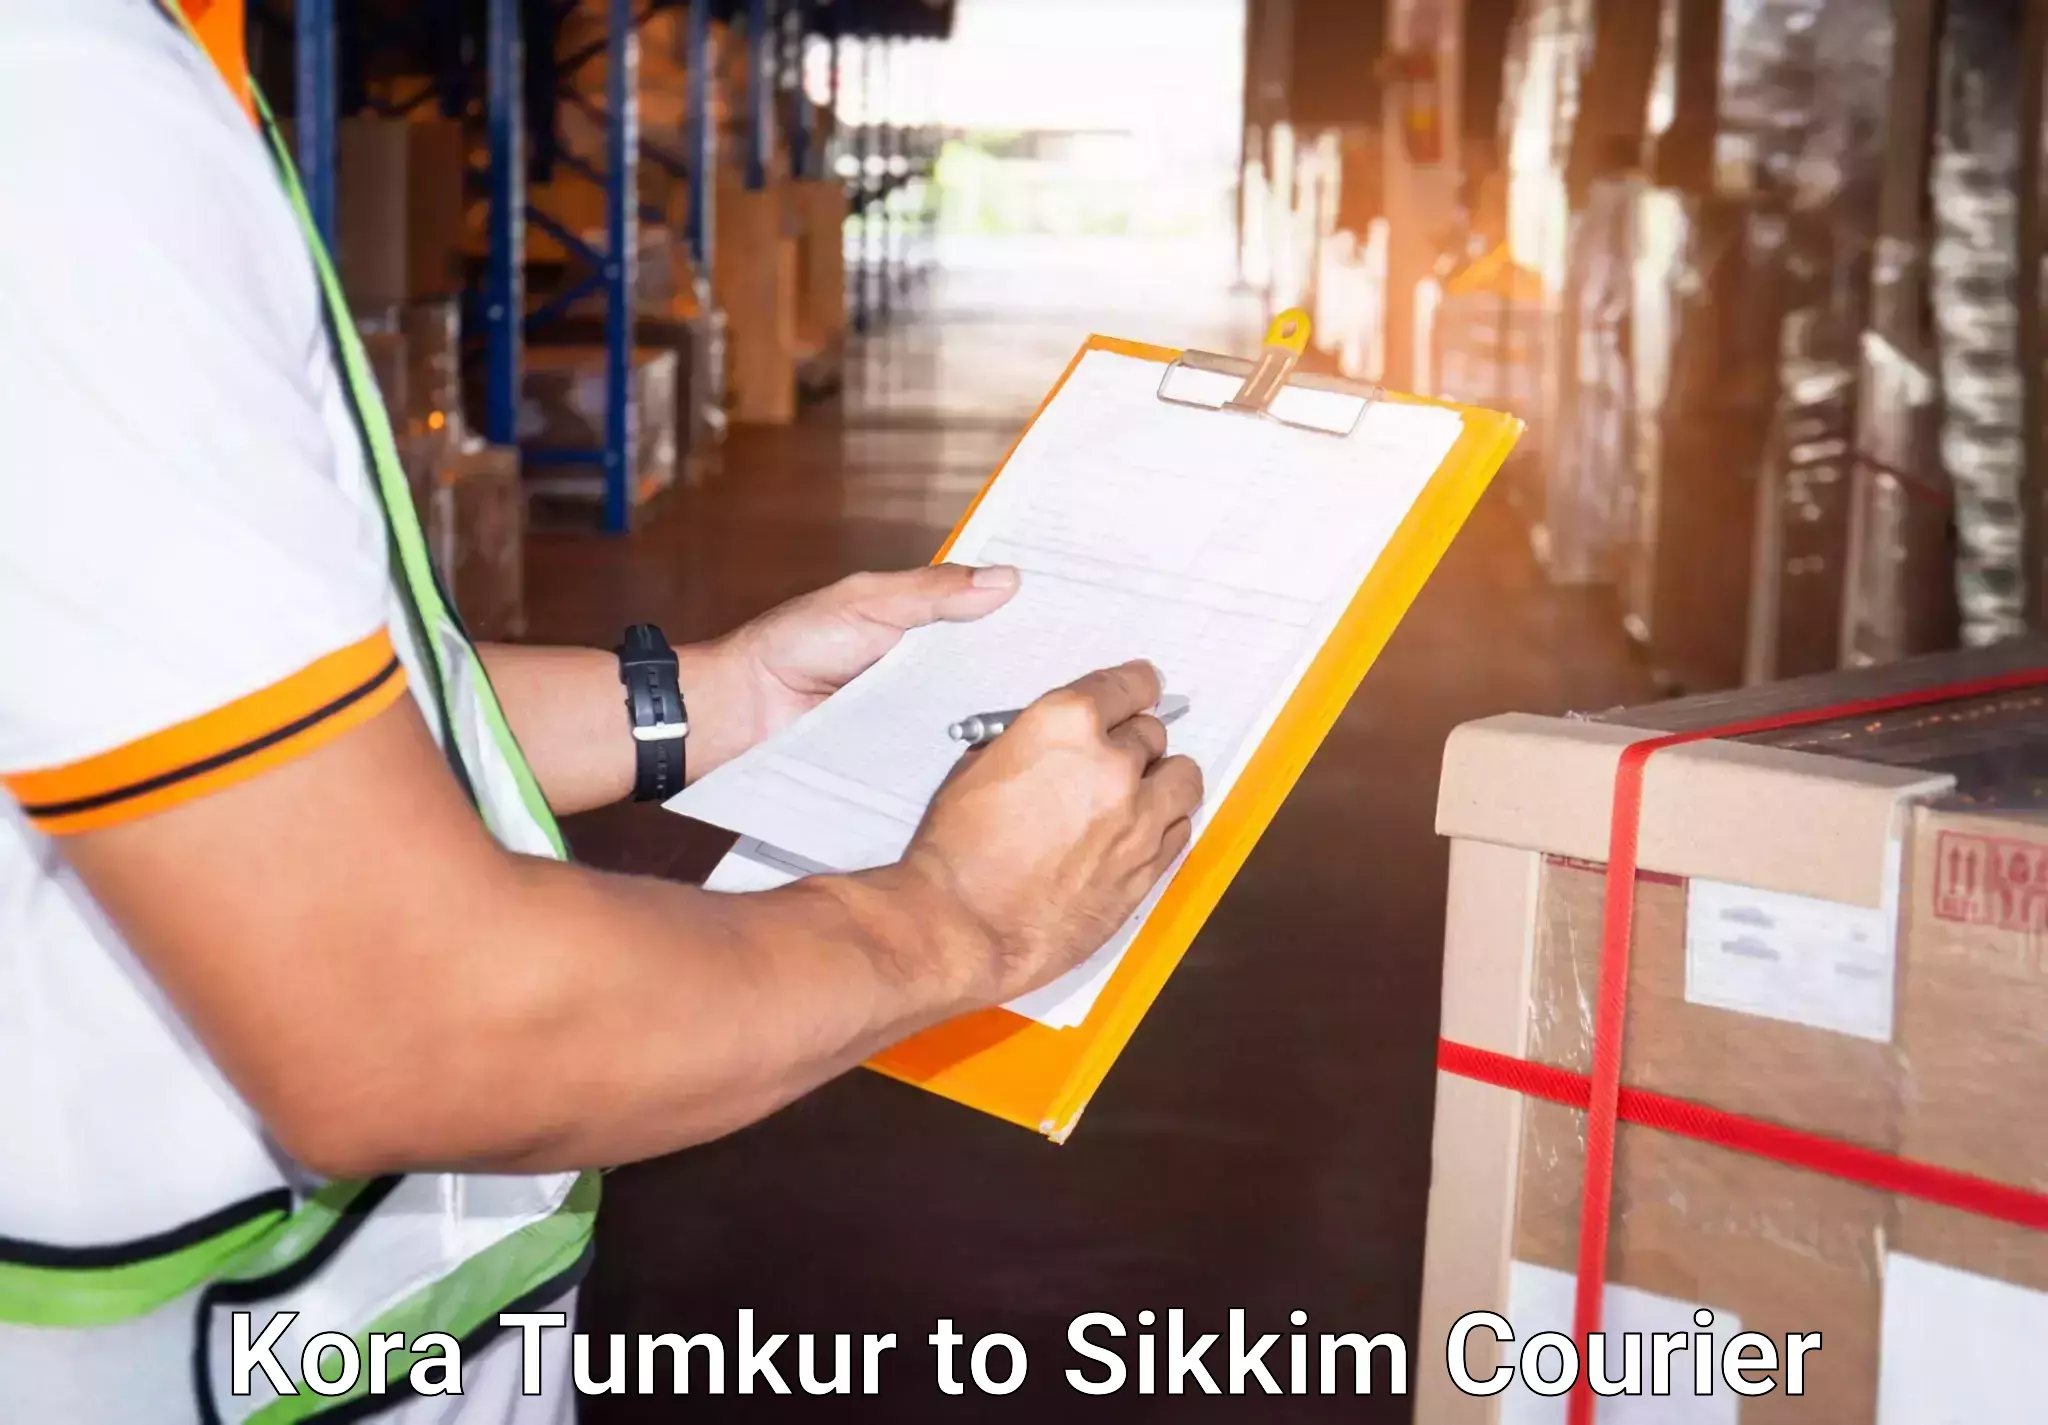 Personalized luggage shipping Kora Tumkur to West Sikkim